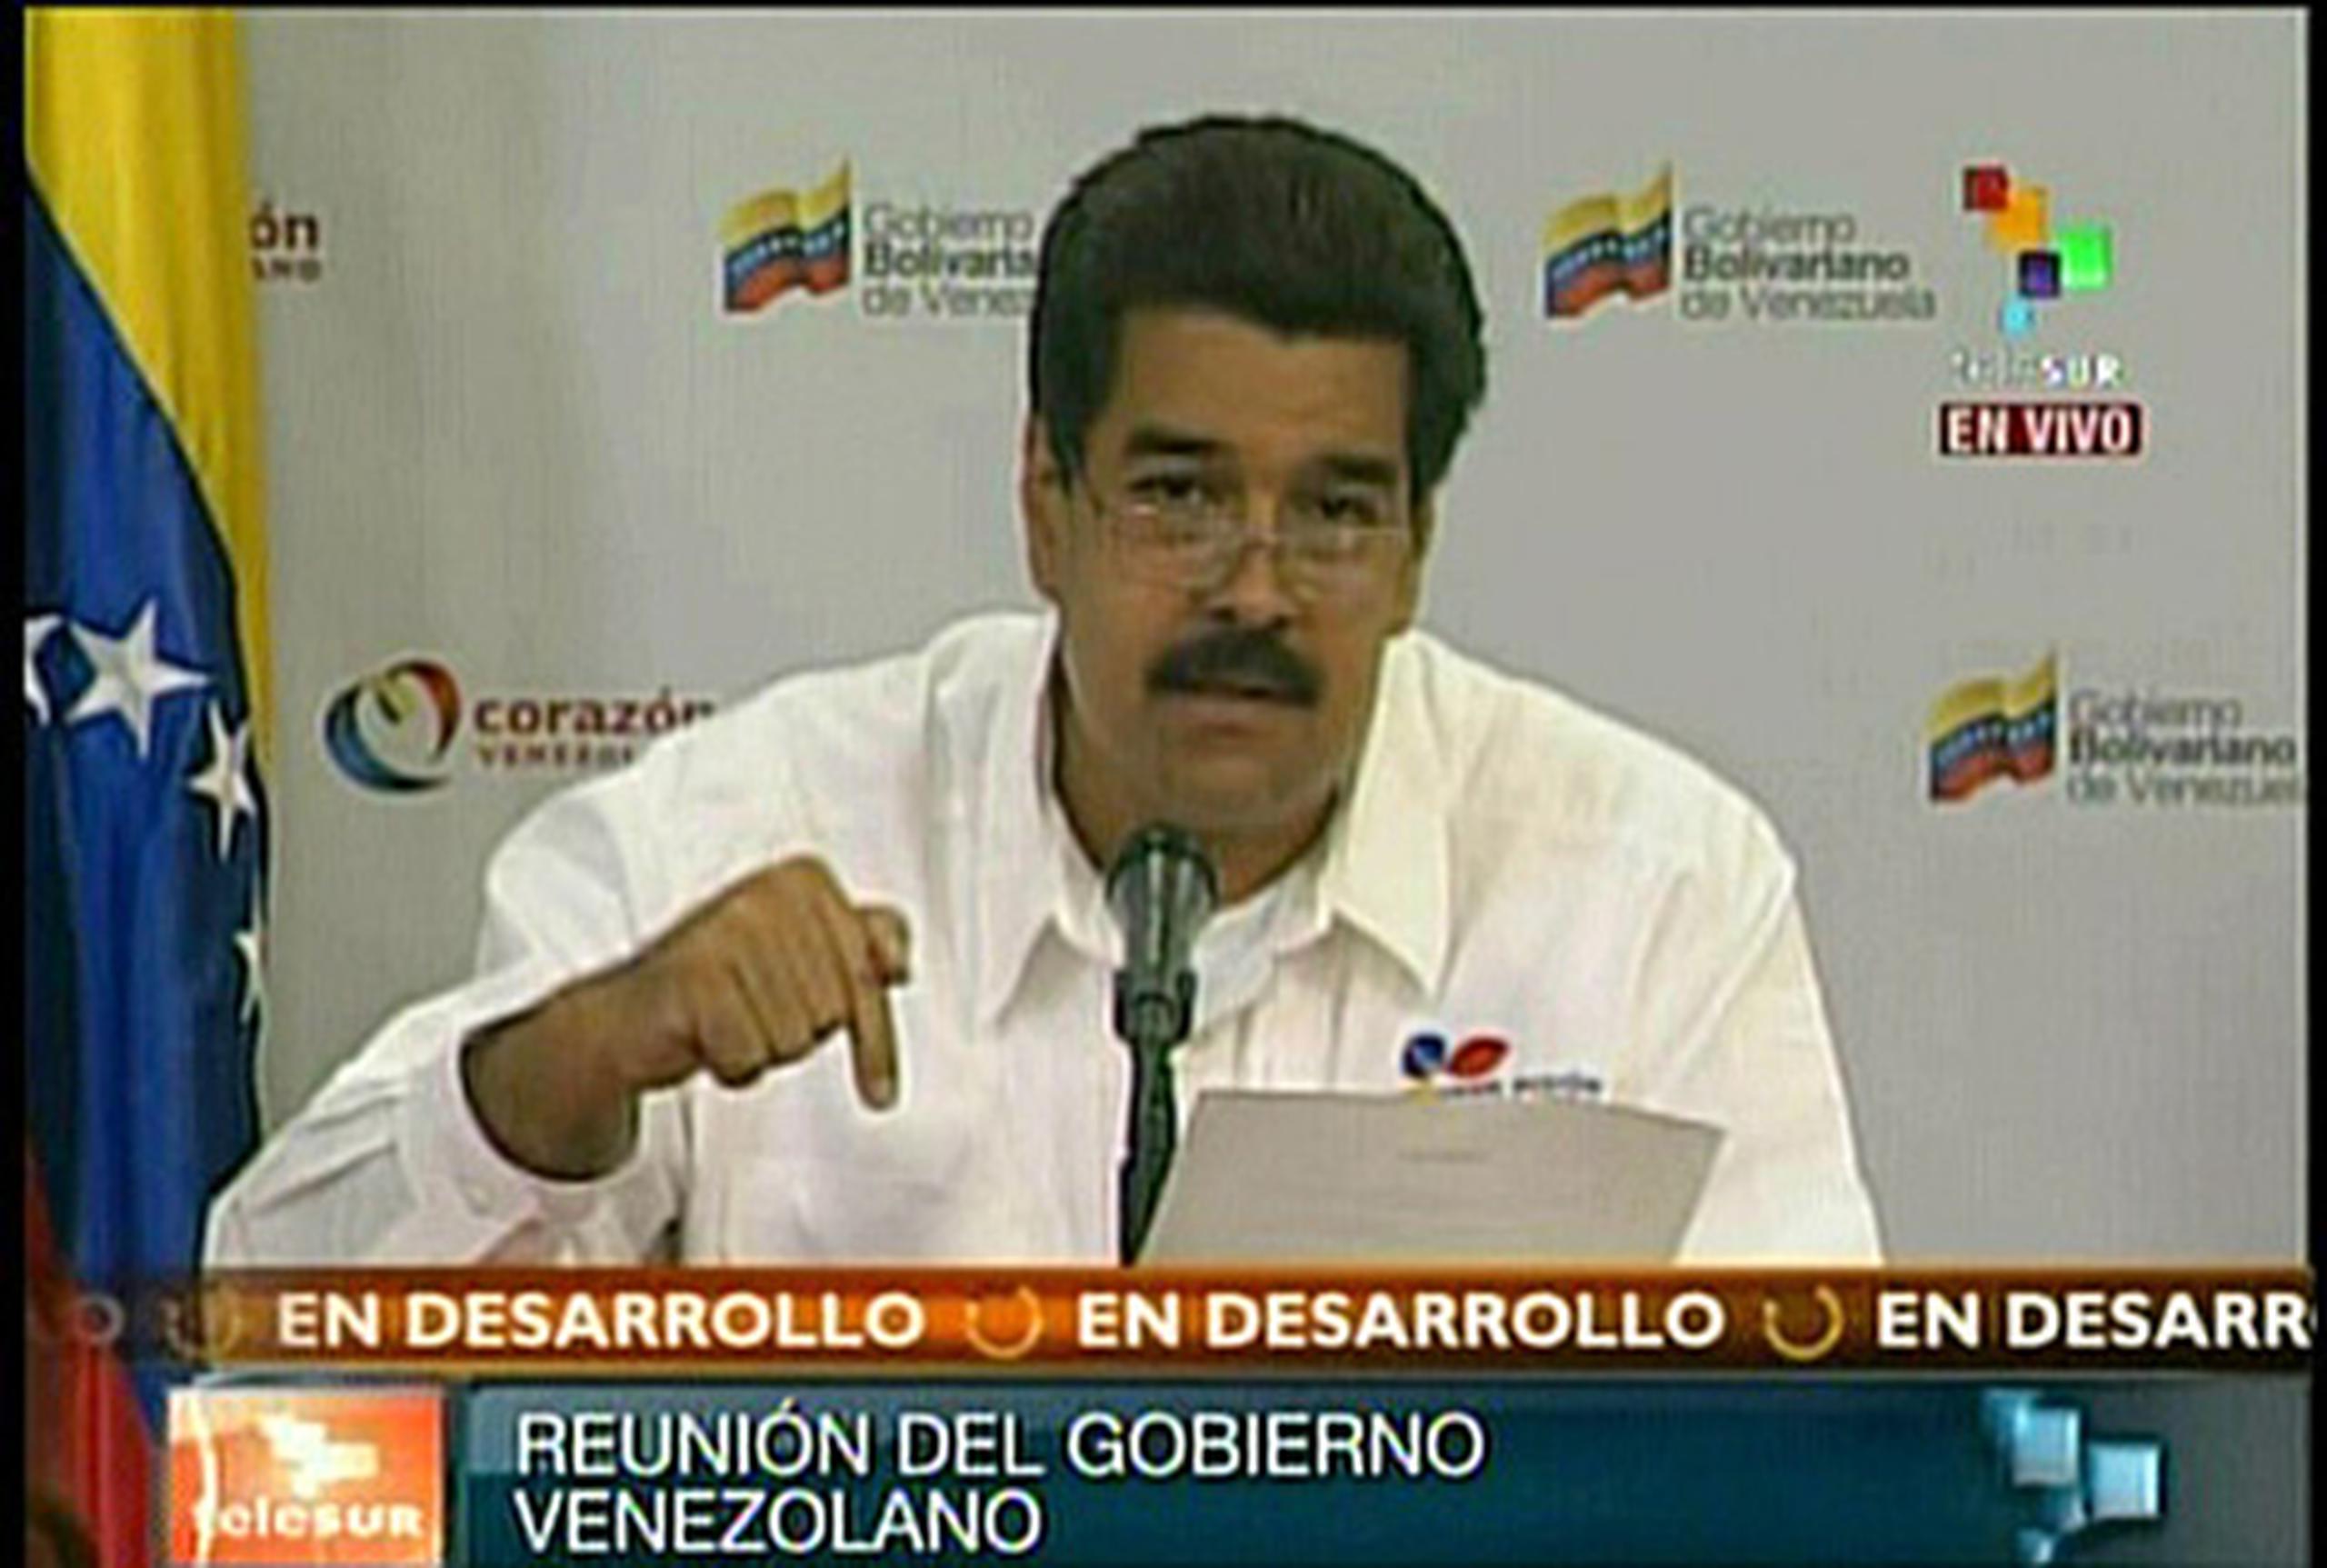 En la reunión, que fue denominada como una “jornada intensa de trabajo”, Maduro dijo que los enemigos de su país son los responsables de la enfermedad de Chávez.
